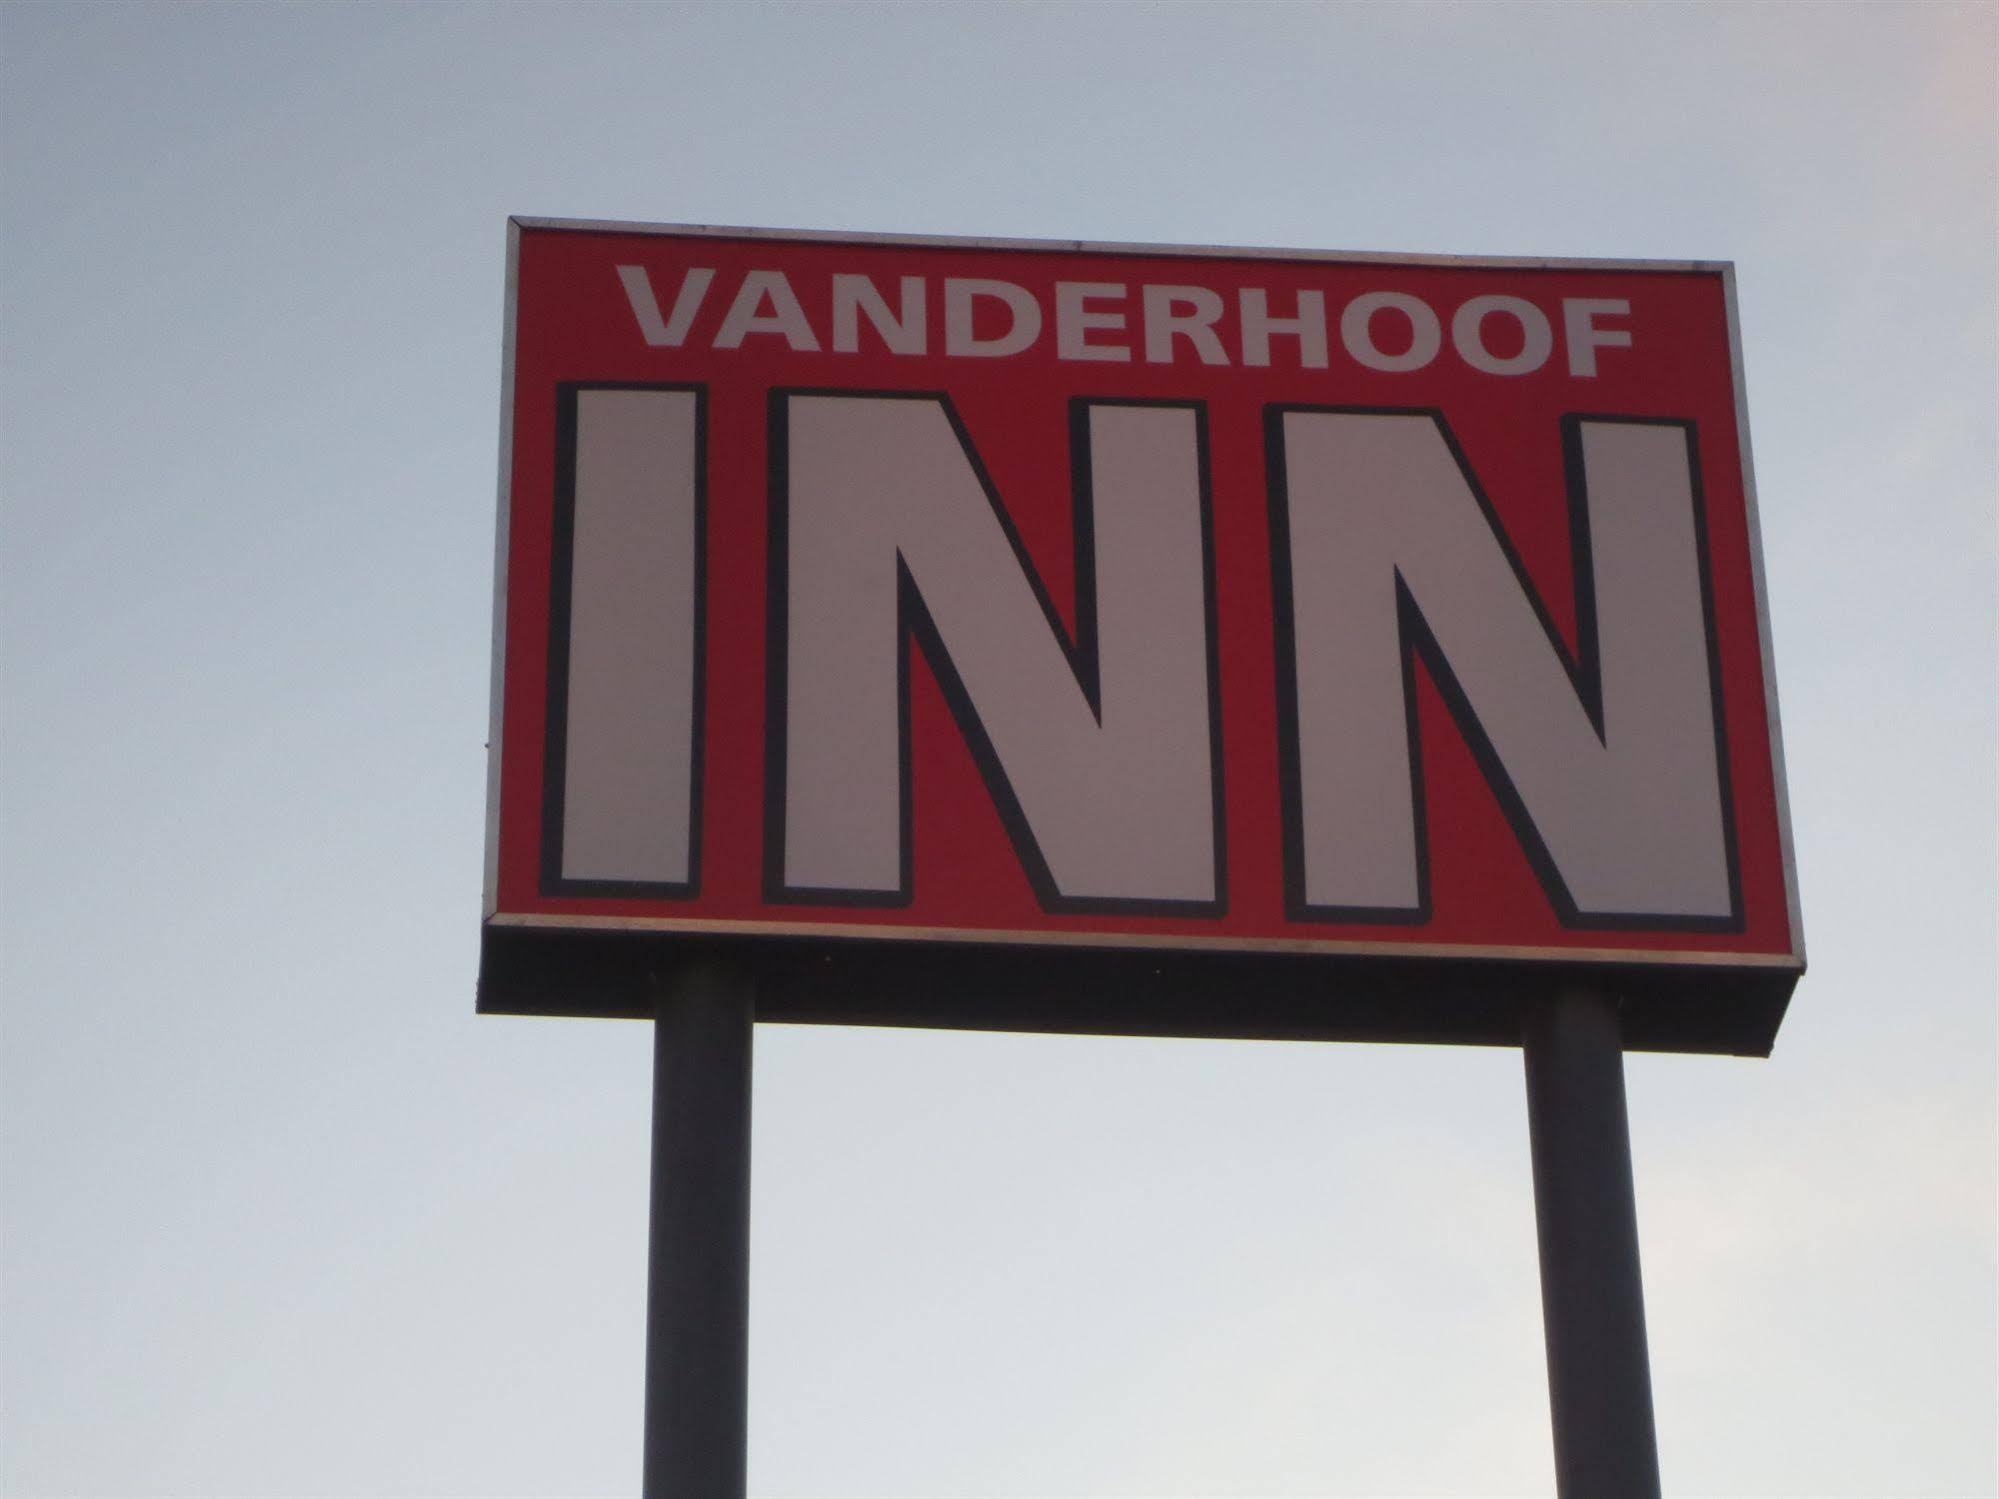 Vanderhoof Inn